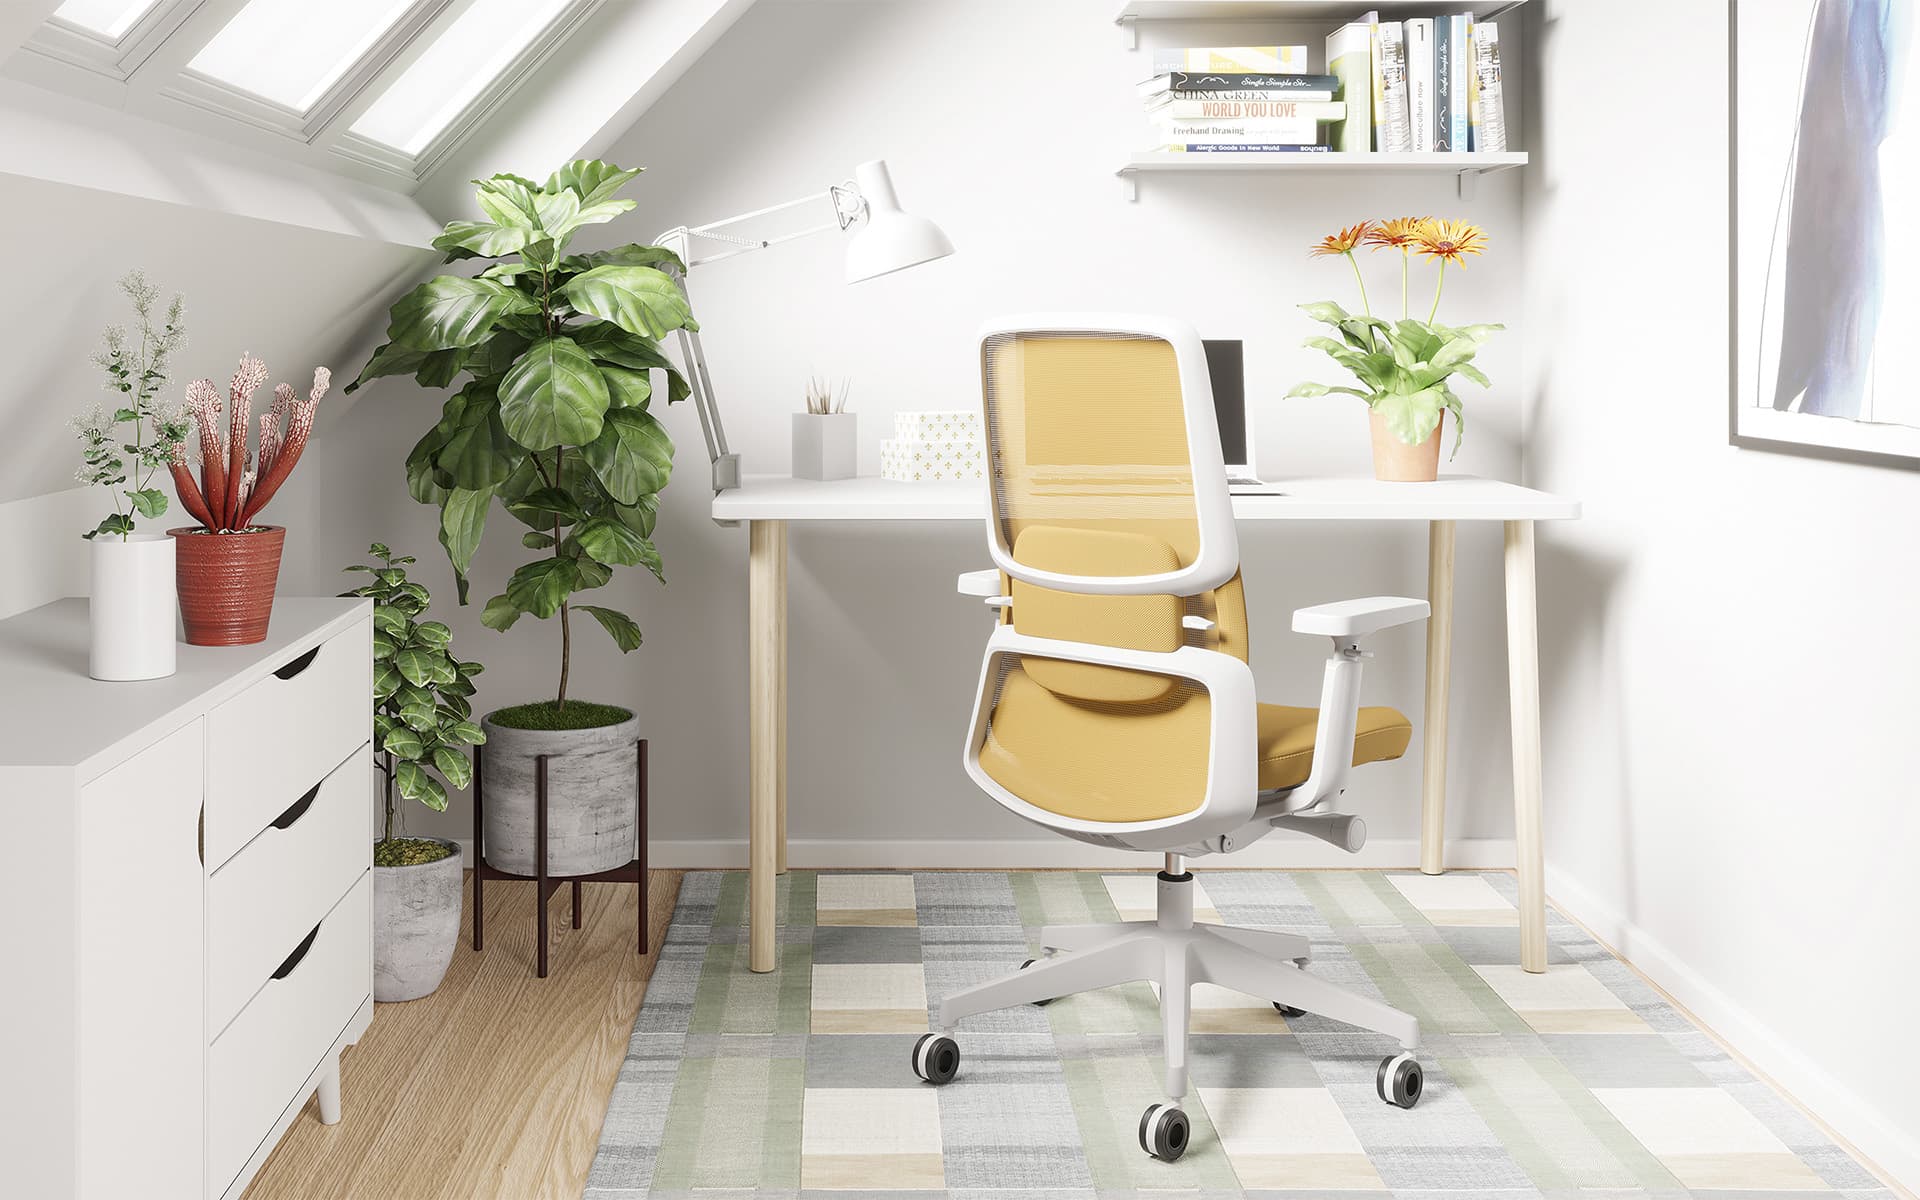 M2 Bürostuhl von ITO Design in Weiss und Dunkelgelb in einem kleinen, modernen, lichtdurchfluteten Home-Office